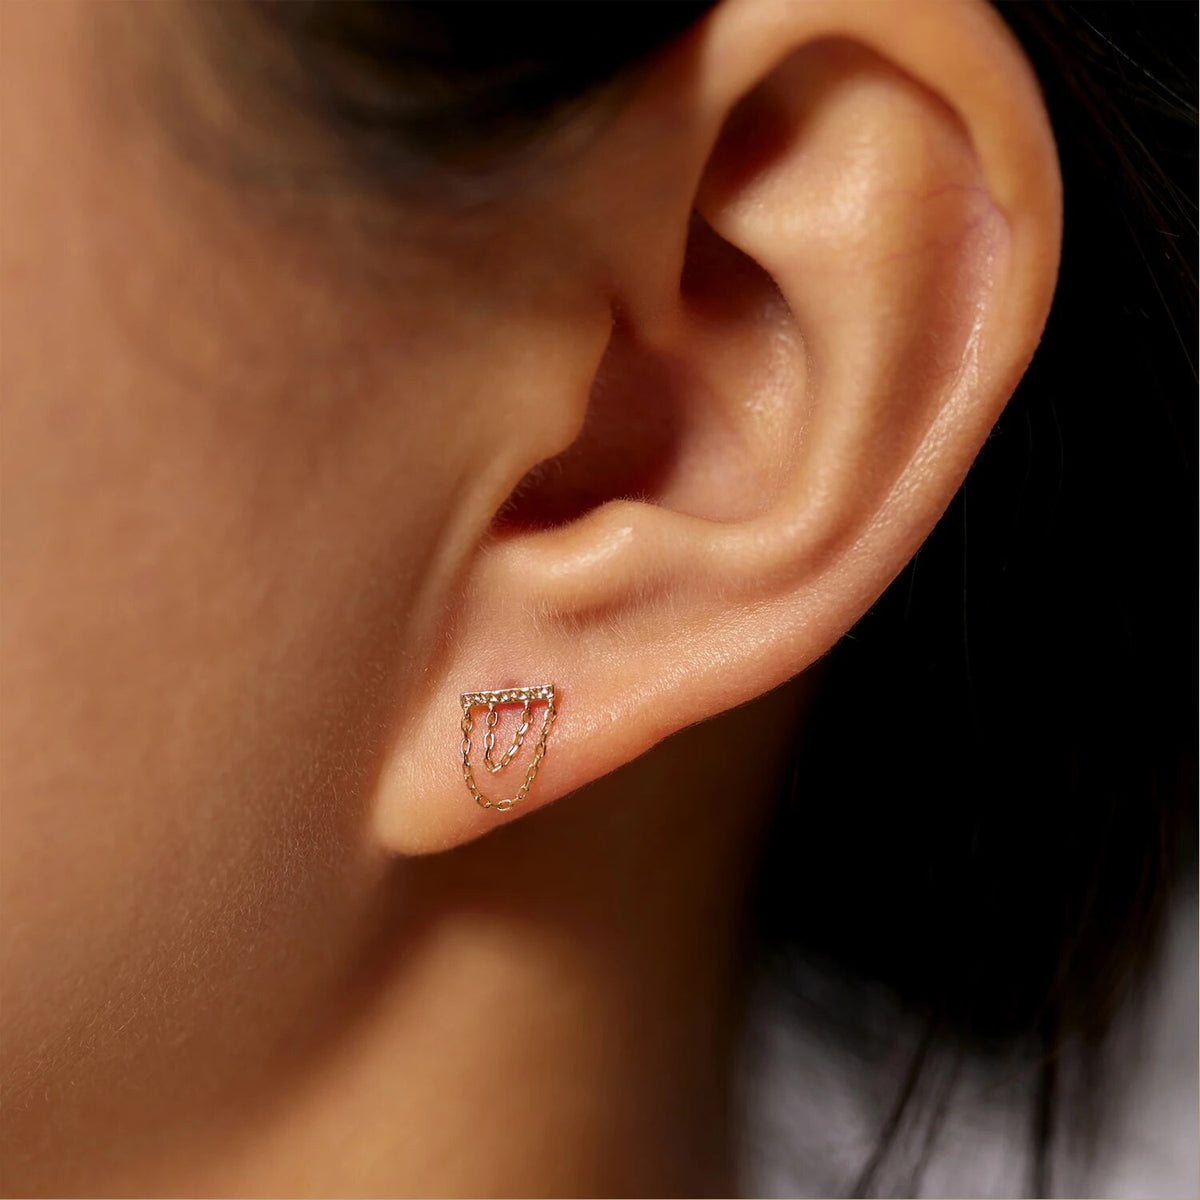 Boucle d’oreille hélix en or 14K avec chaînes boucles d’oreilles conque piercing lobe d’oreille bijoux labret stud